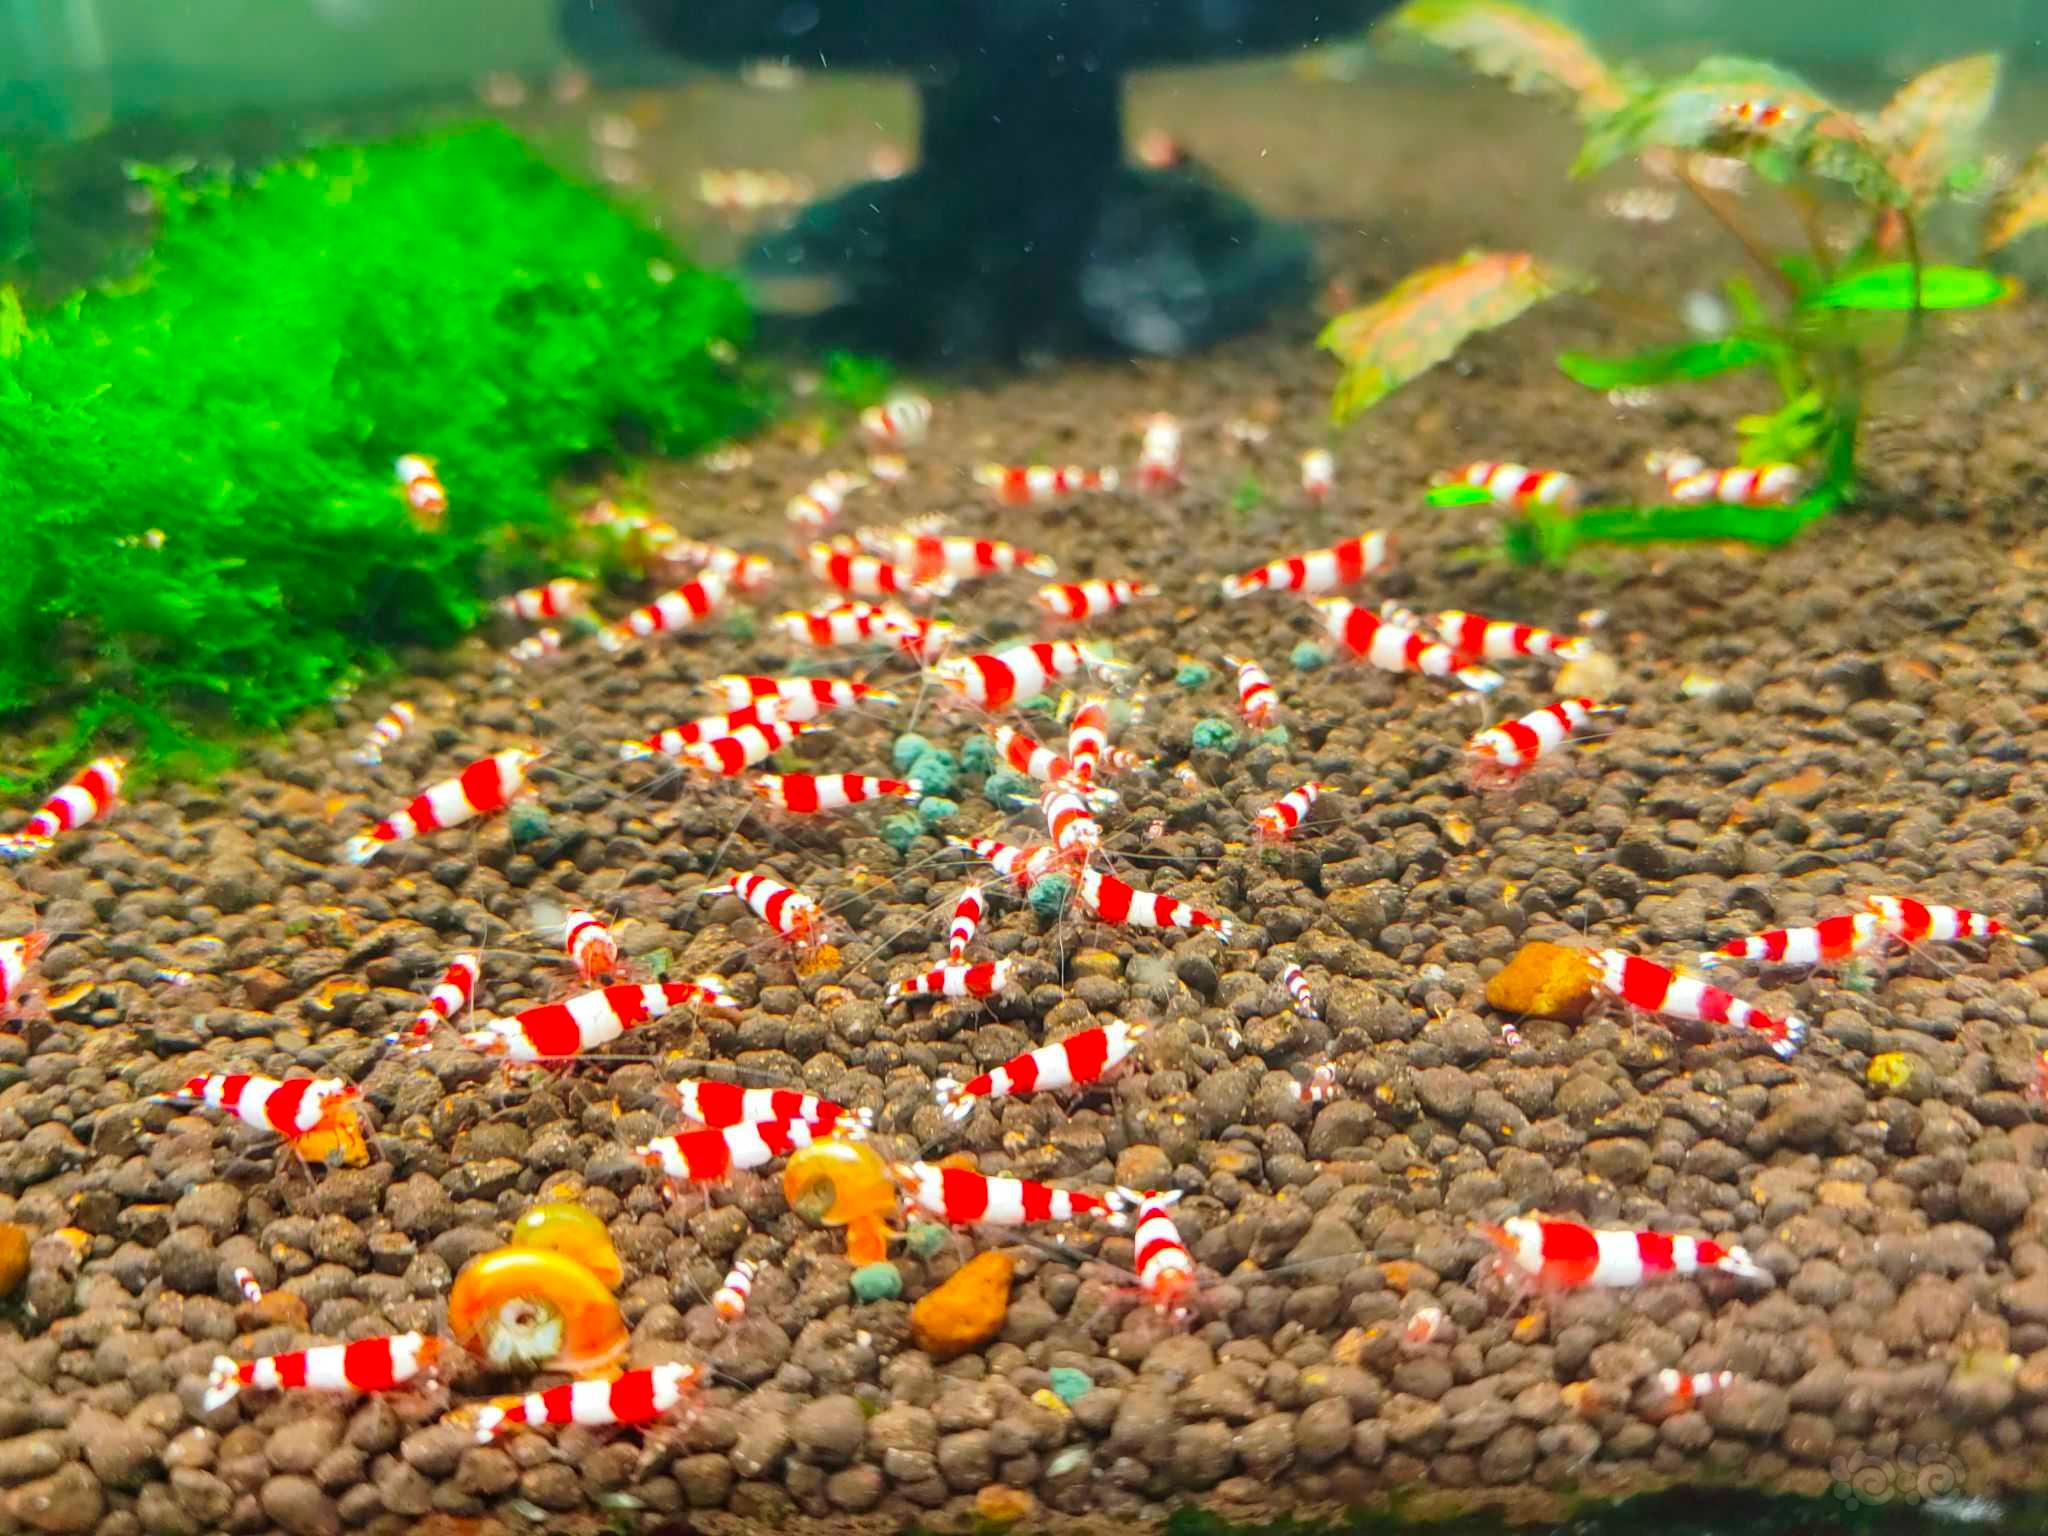 【水晶虾】出点三段红尾红白 出三段稳定度水晶虾之最-图1